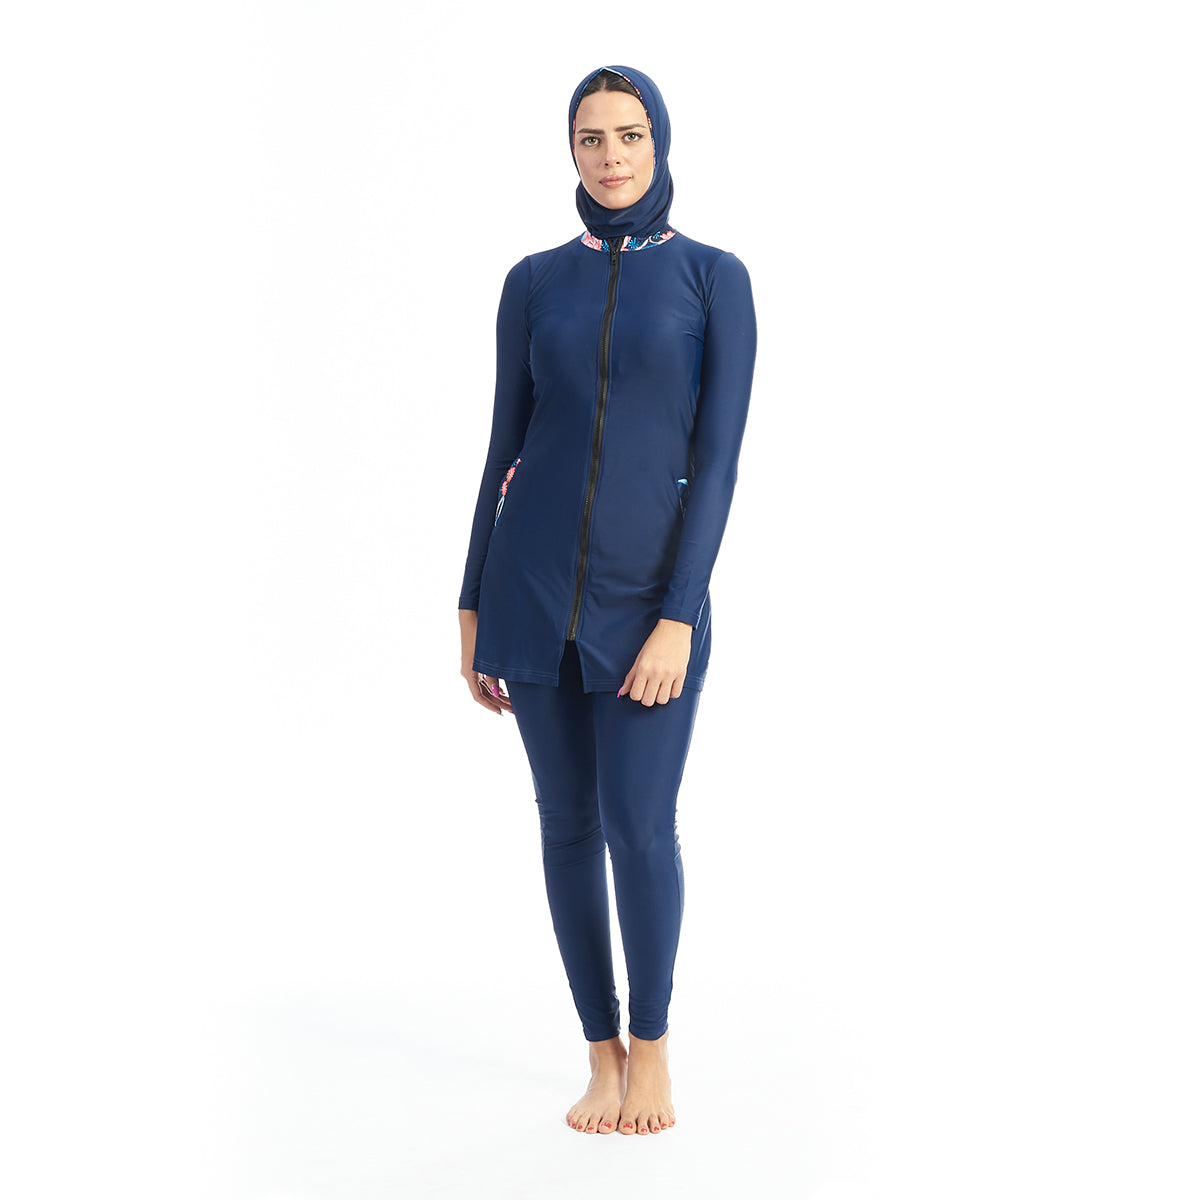 Energetics Burkini Full Covered Swimsuit For Women + Bonnet, Dark Blue